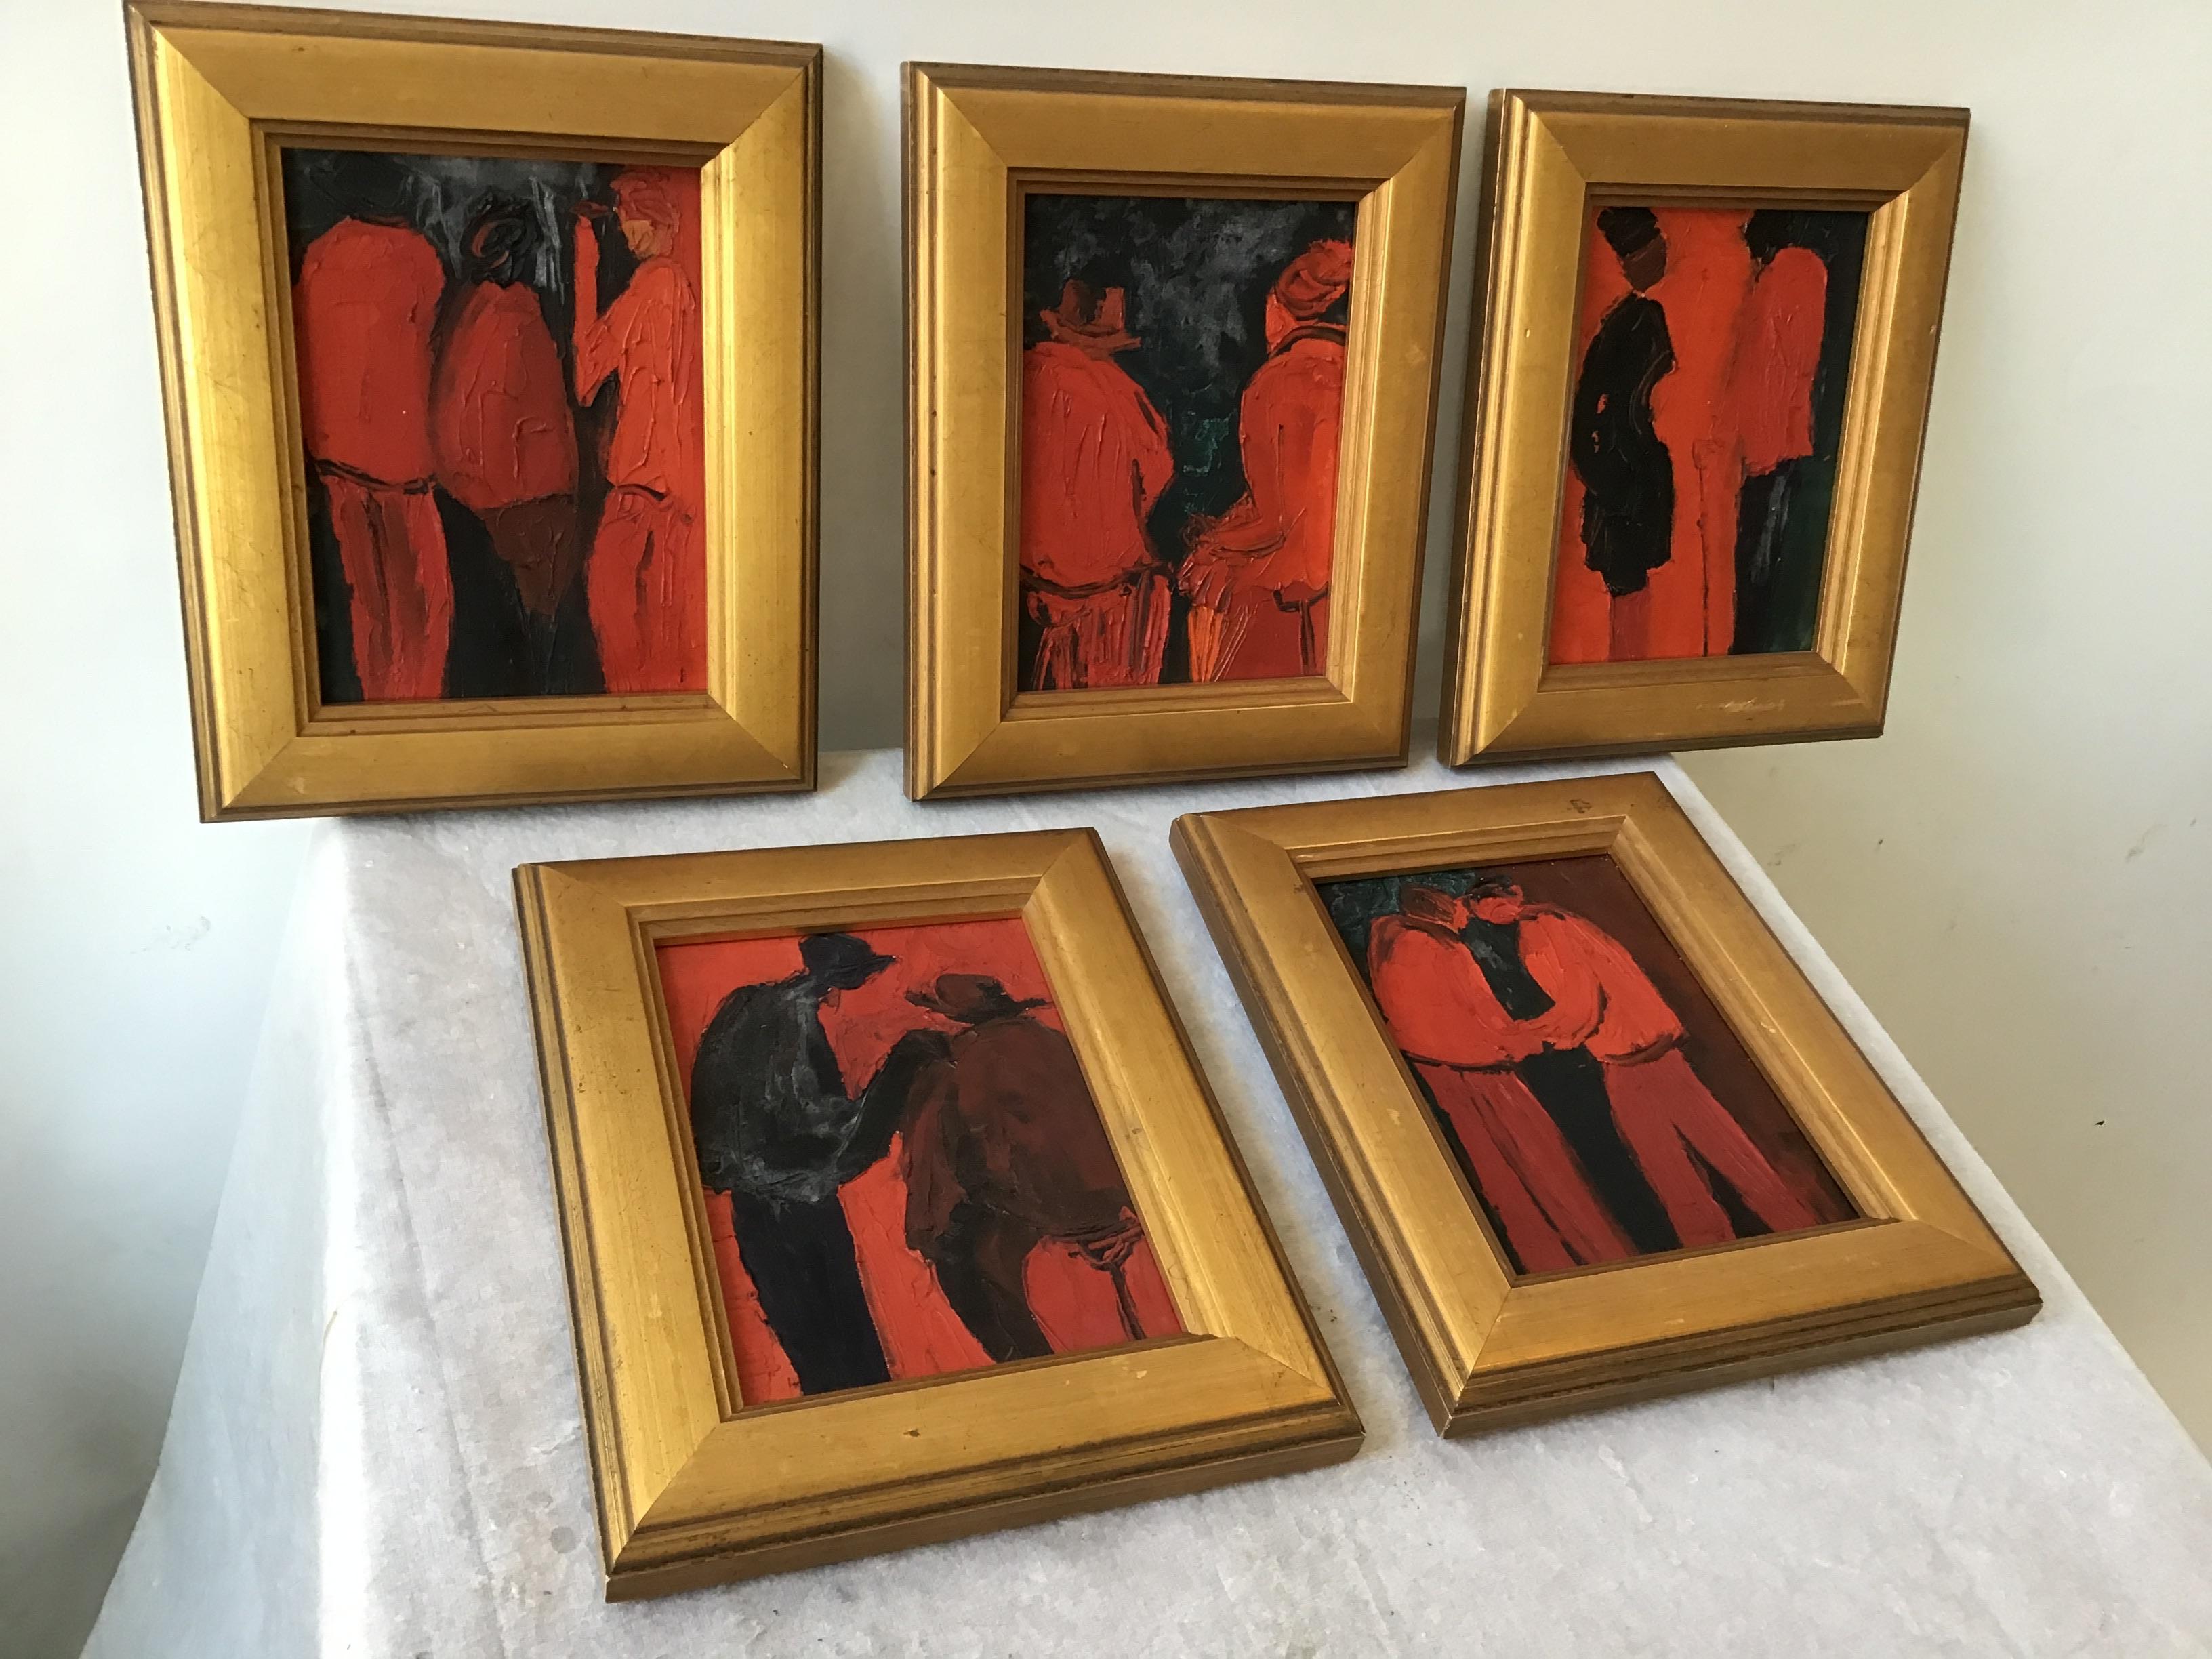 5 figural paintings by Rabinowitz, painted in Paris in 1964. In Larson Juhl frames.